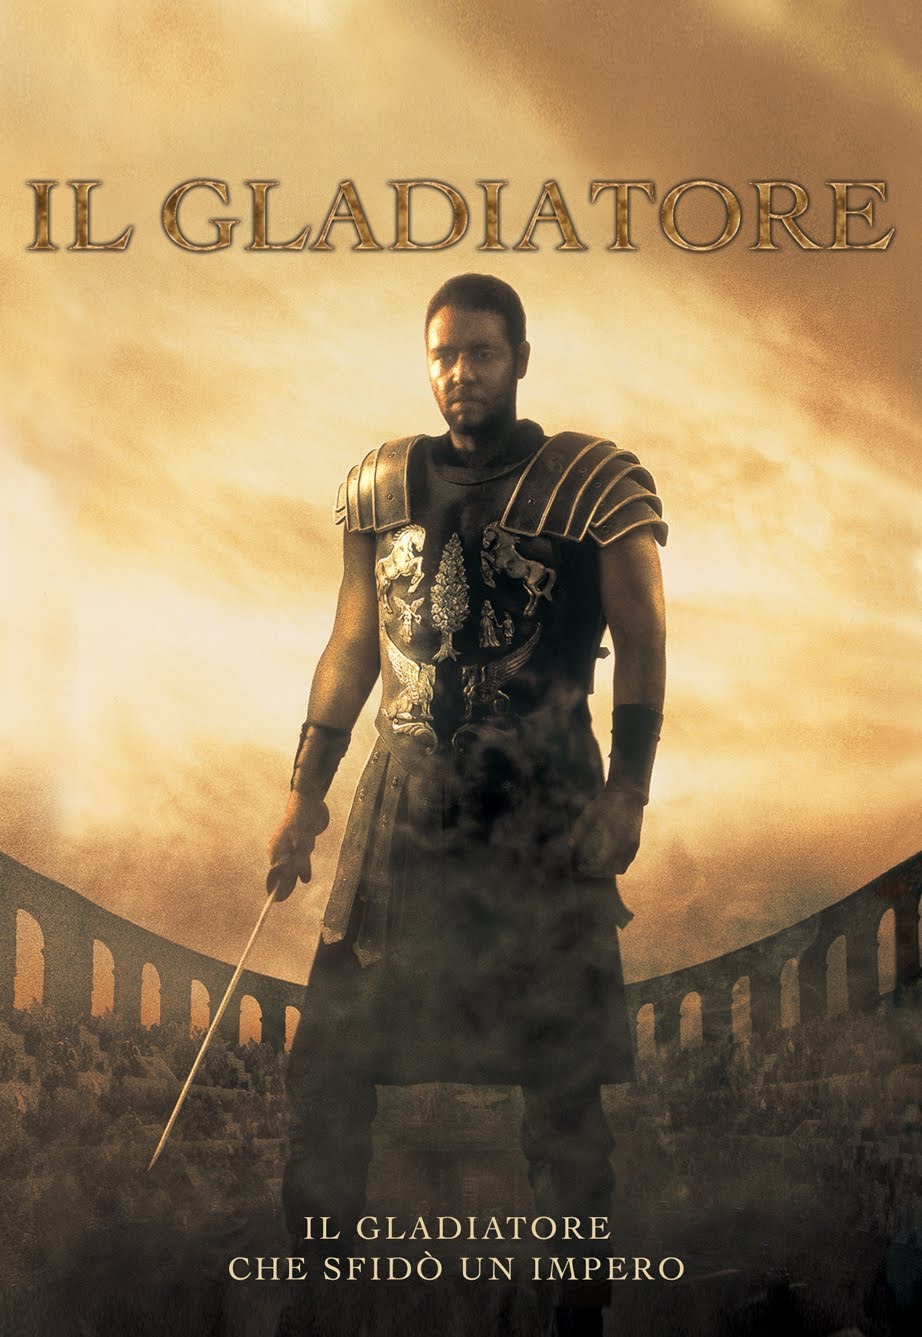 Il gladiatore [HD] (2000)